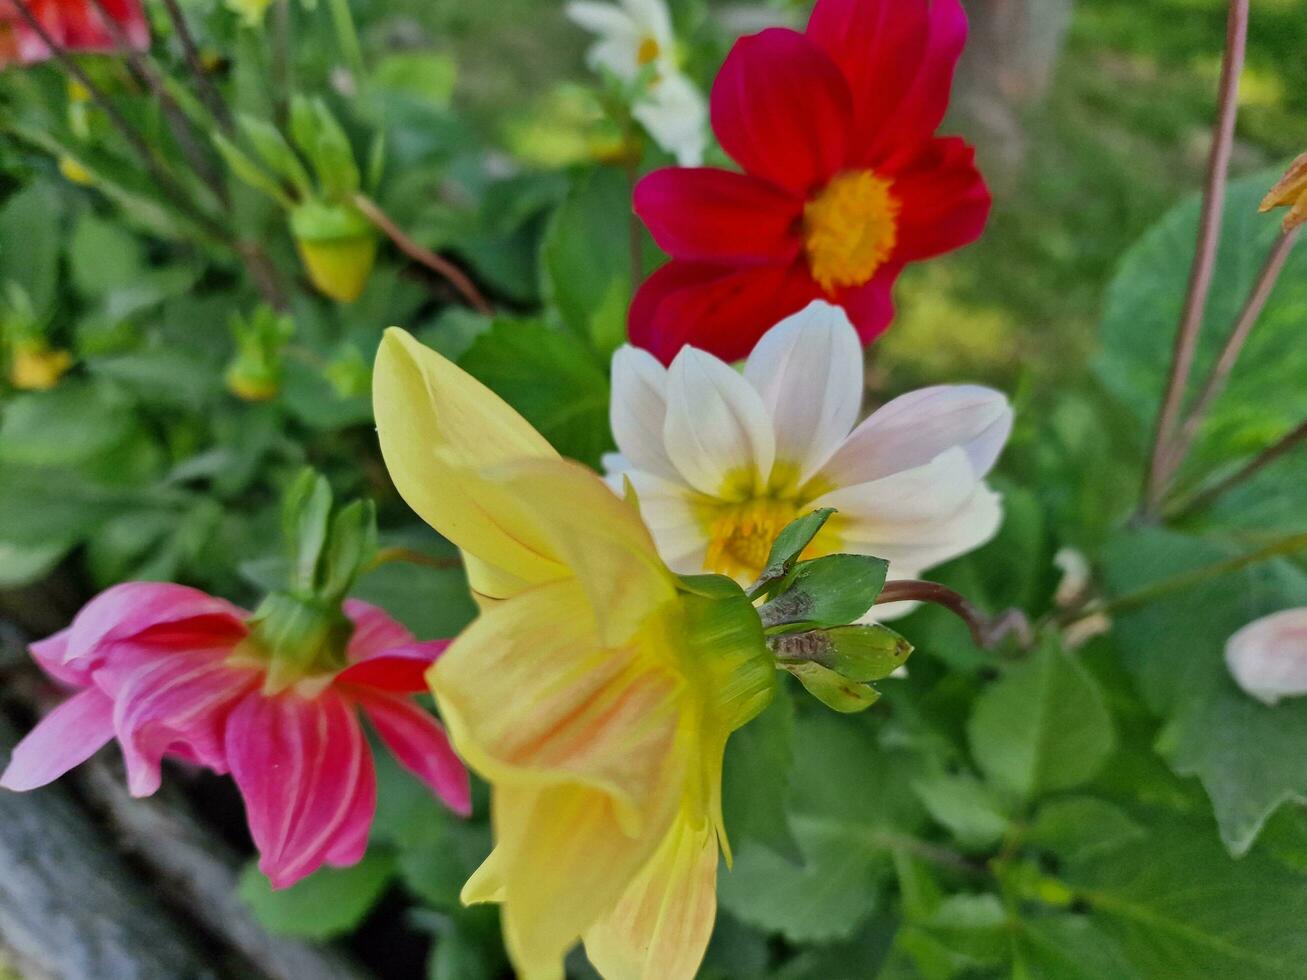 verbazingwekkend voorjaar kleuren in bloemen, bezoek naar de botanisch tuin foto